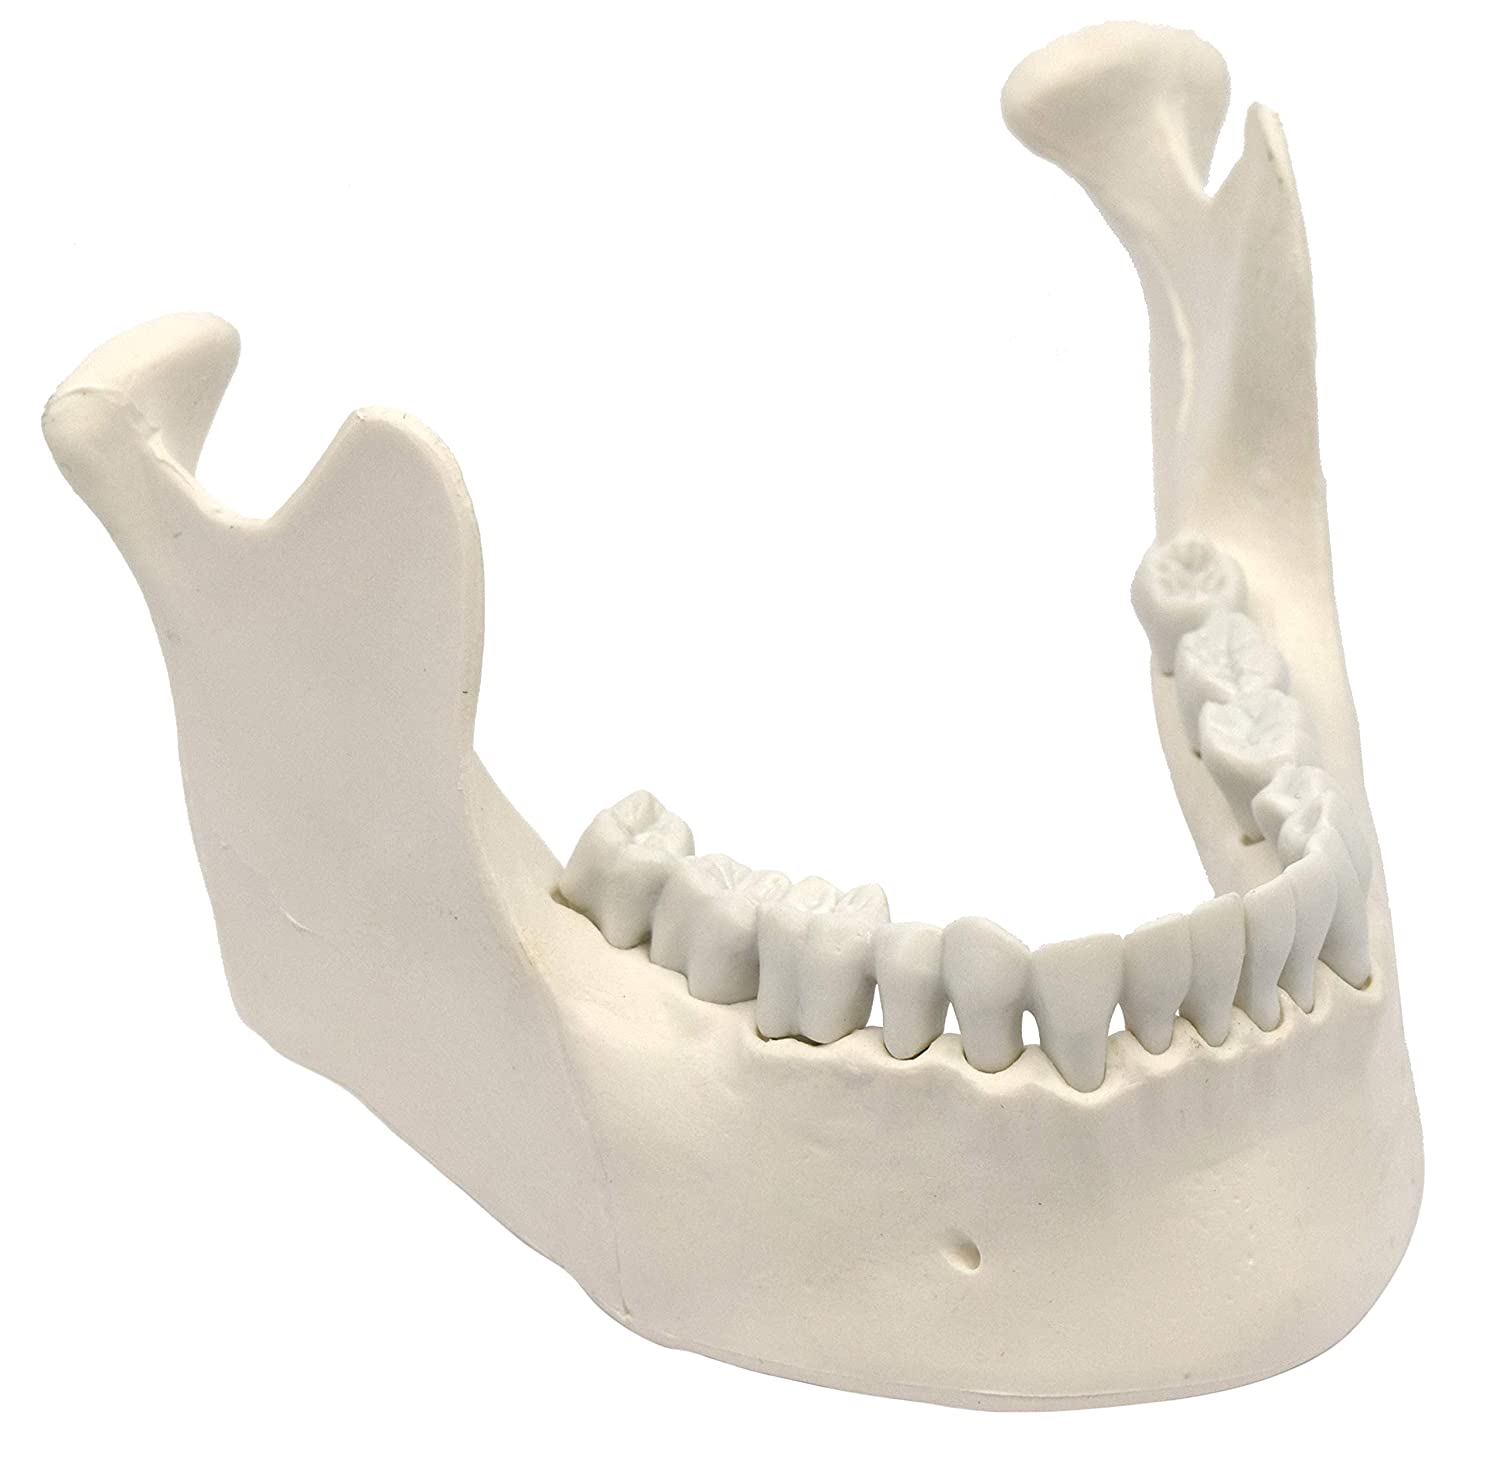 Возрастные аспекты развития костной ткани челюстно-лицевой области и альвеолярного отростка: значение для практической стоматологии